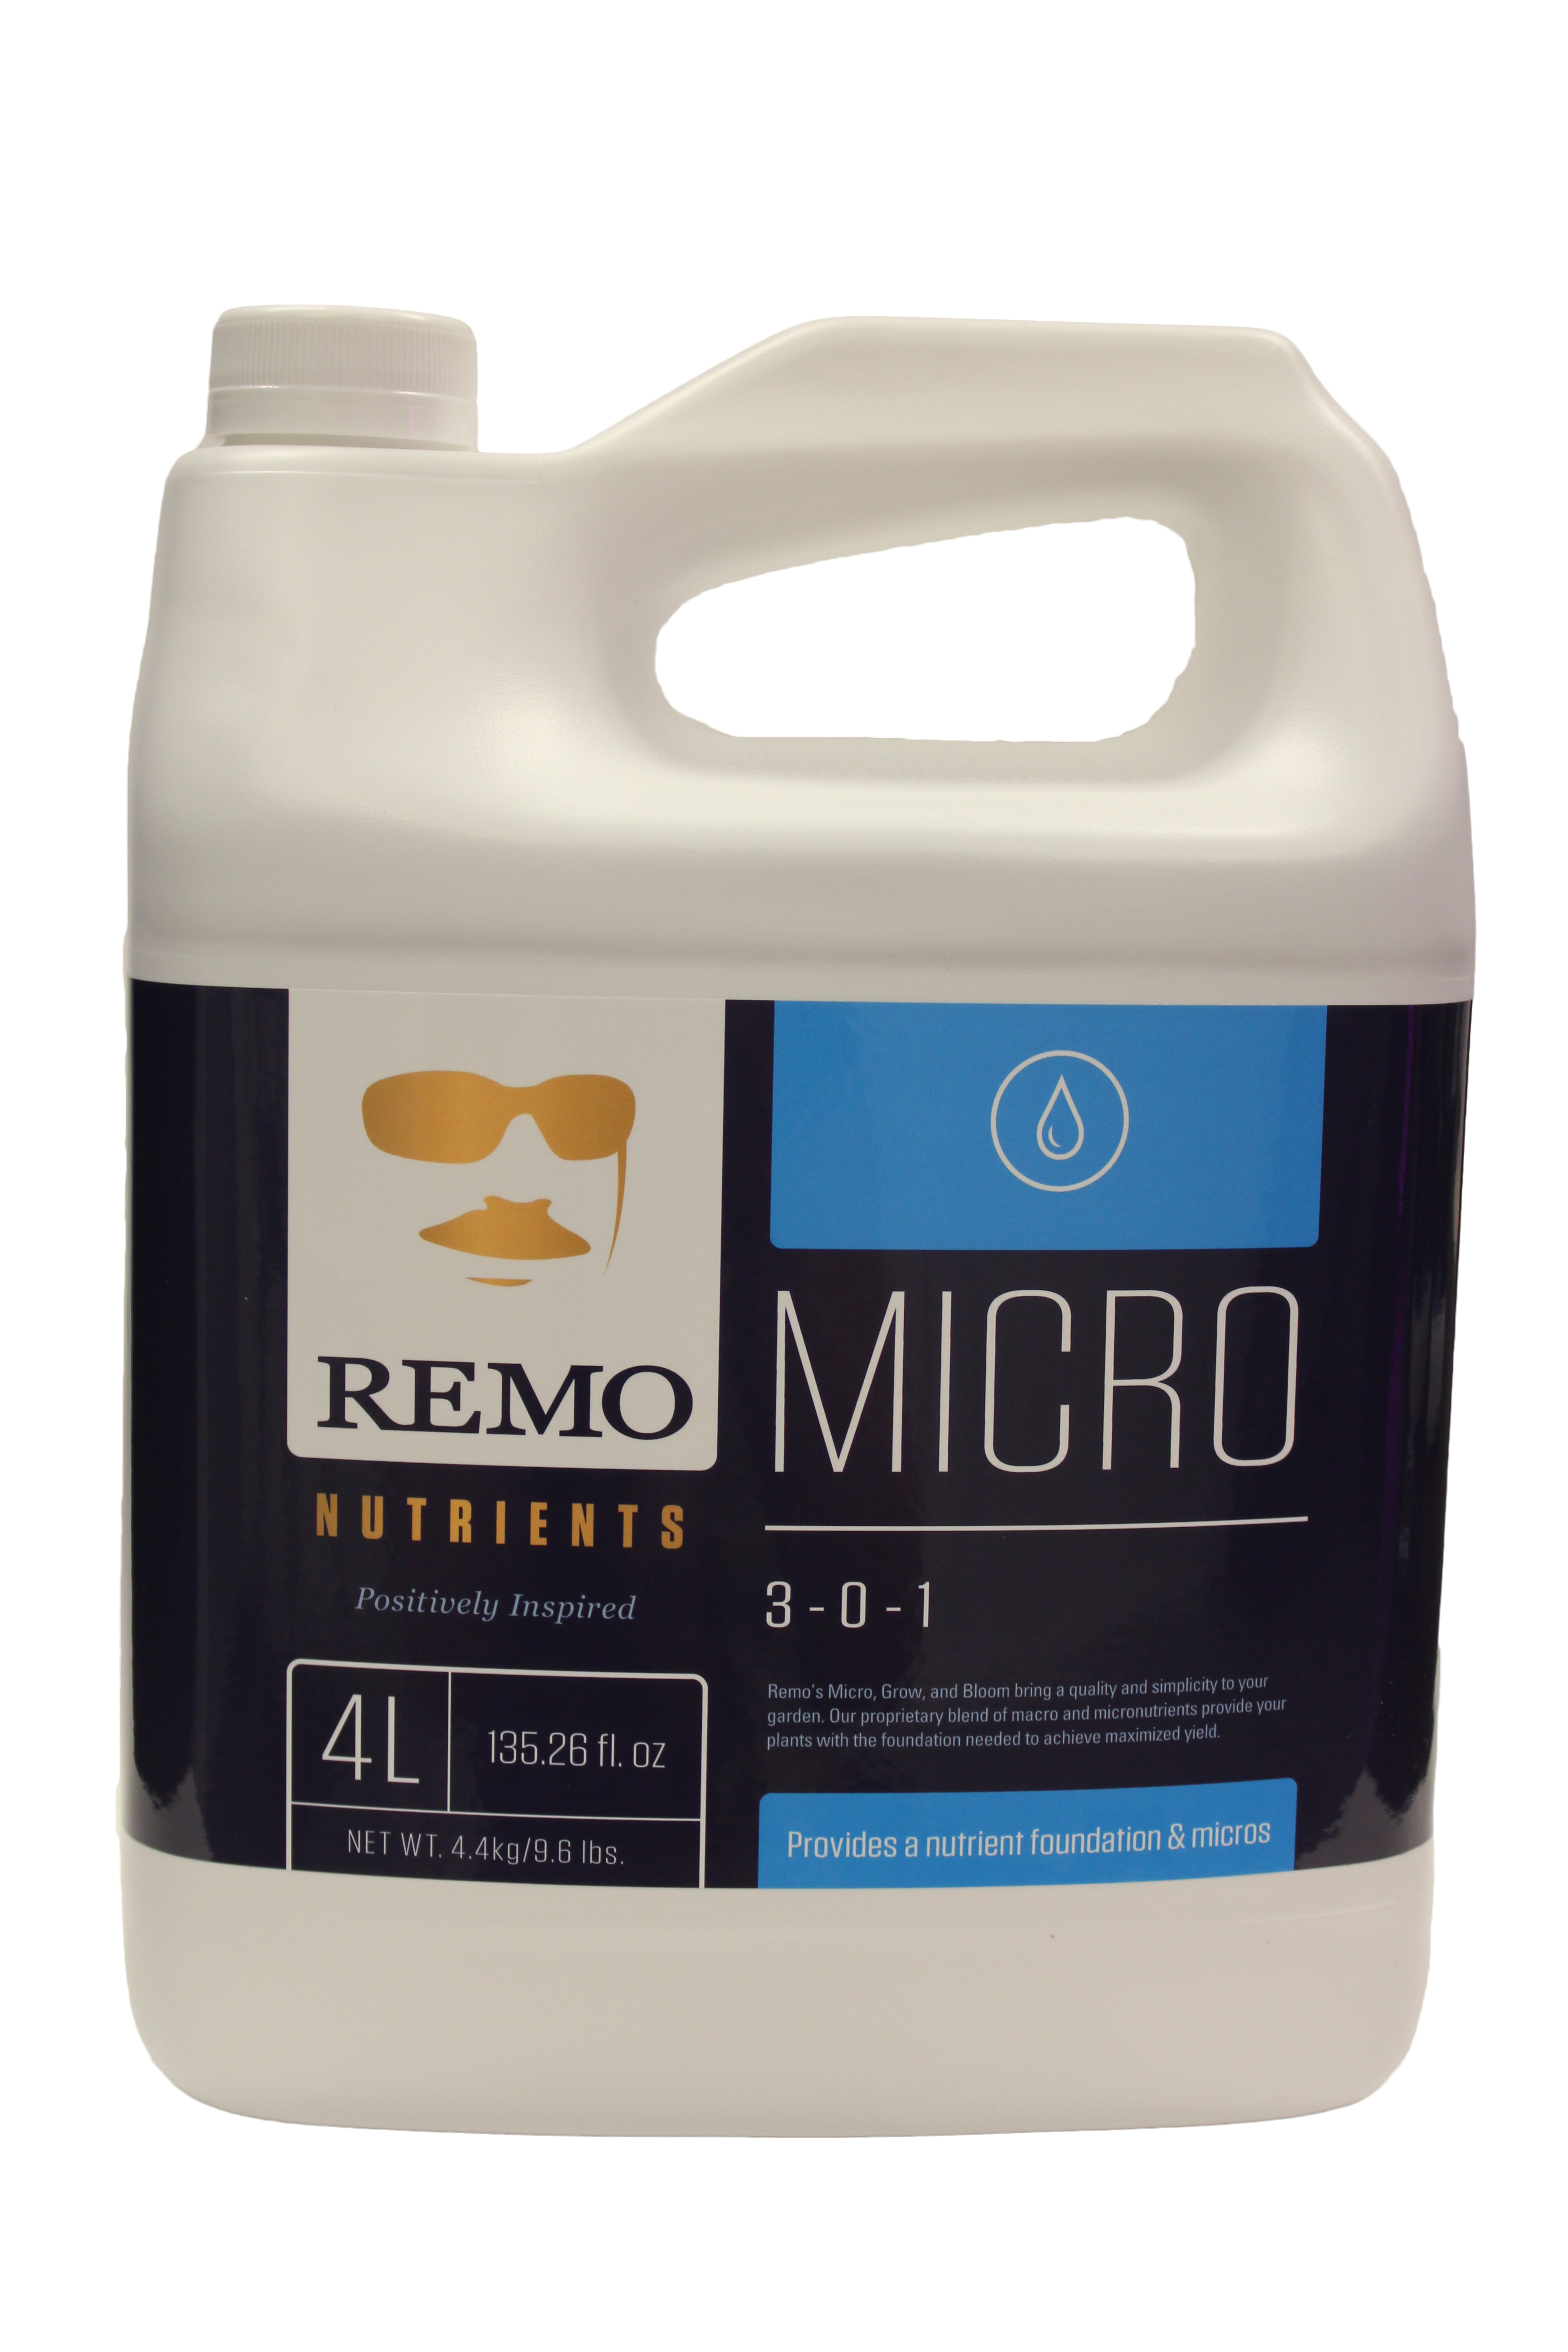 Picture for Remo Micro, 4 L